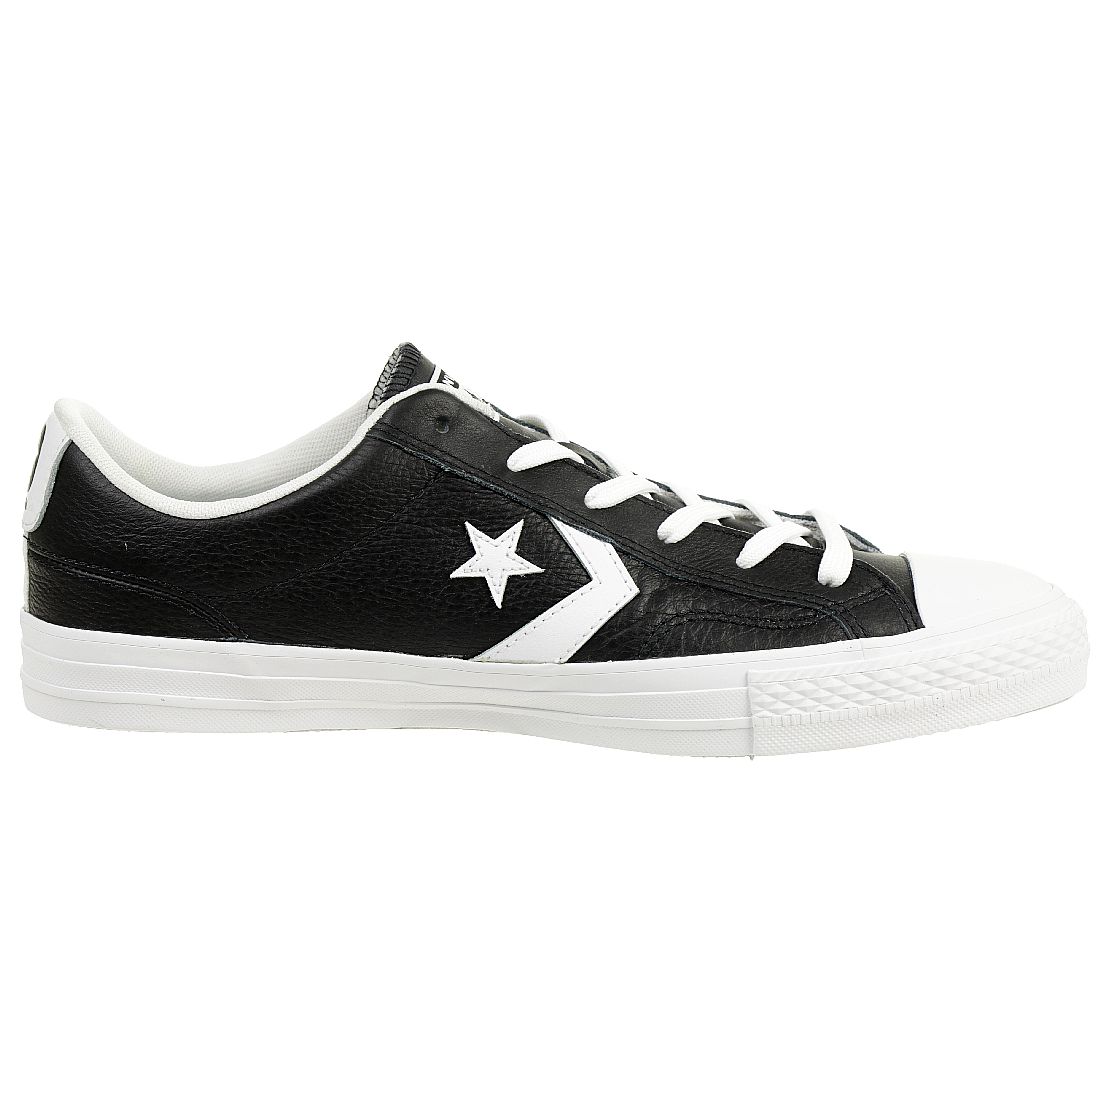 Converse STAR PLAYER OX Schuhe Sneaker Leder schwarz 159780C